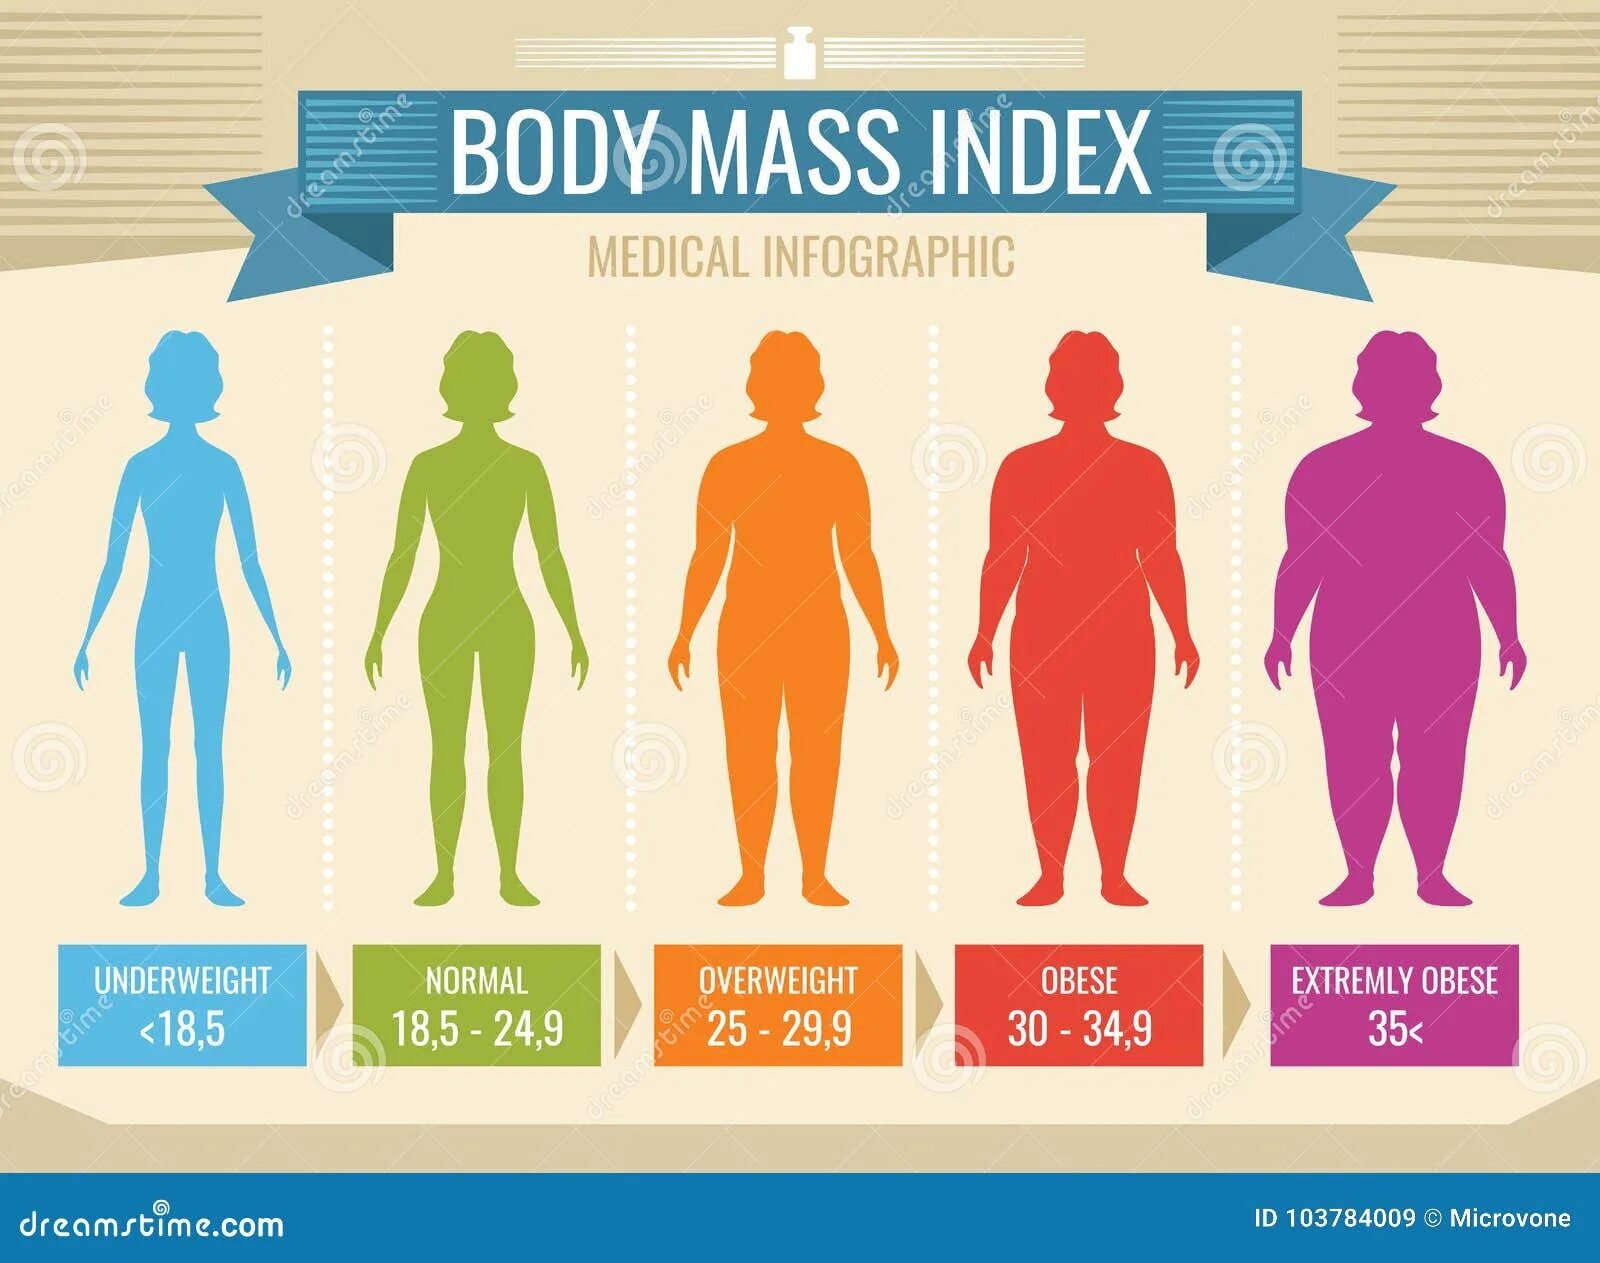 Весы с индексом массы тела. BMI индекс массы тела. ИМТ ожирение. Индекс массы тела инфографика. Как выглядят люди с разным ИМТ.